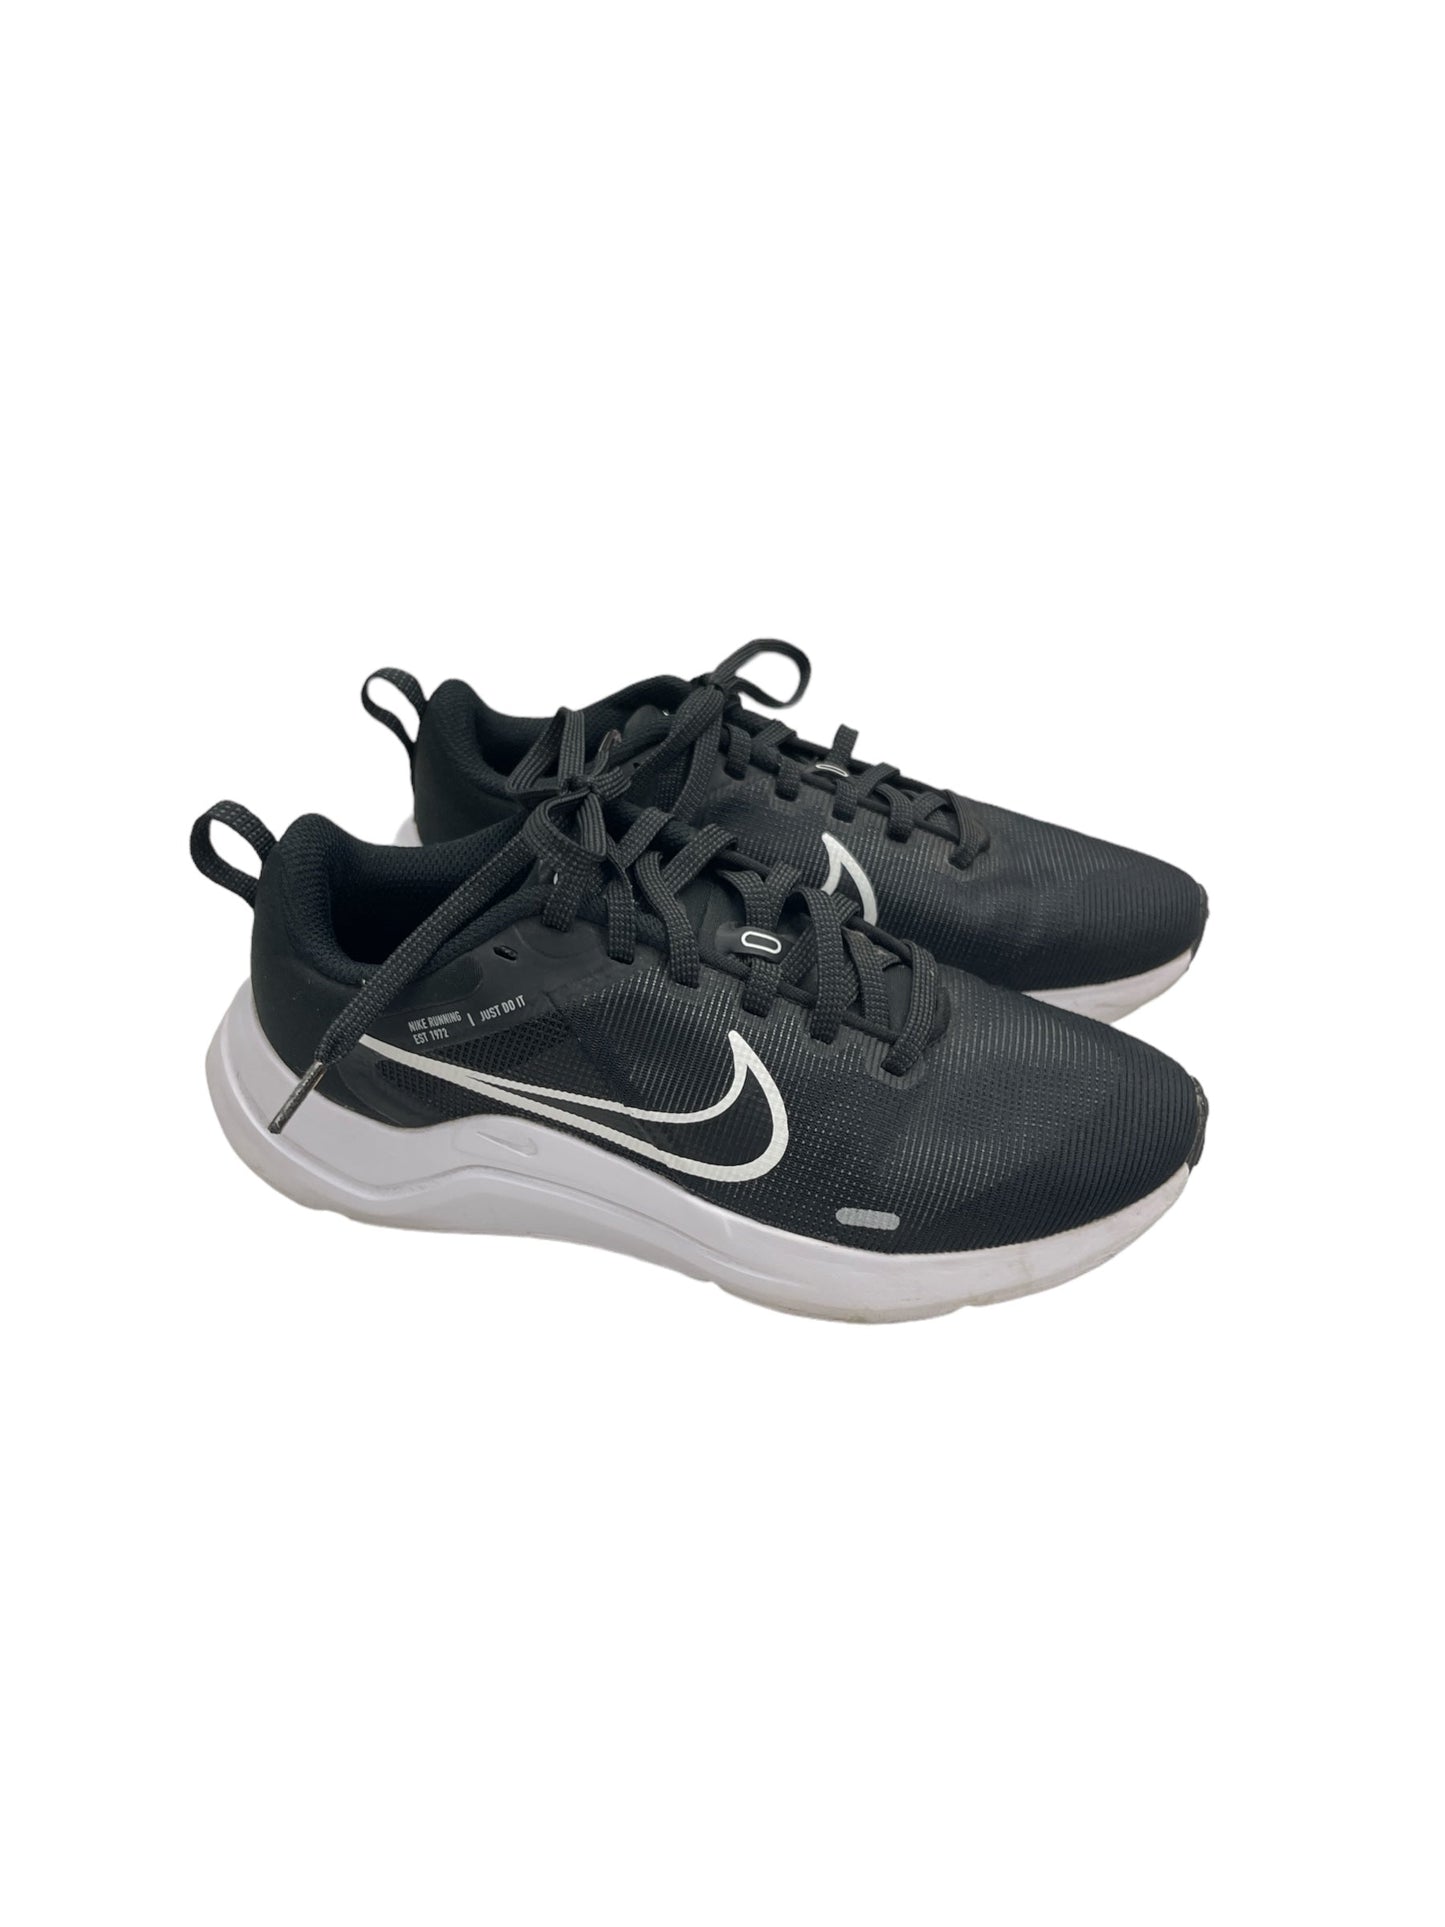 Black & White Shoes Athletic Nike, Size 5